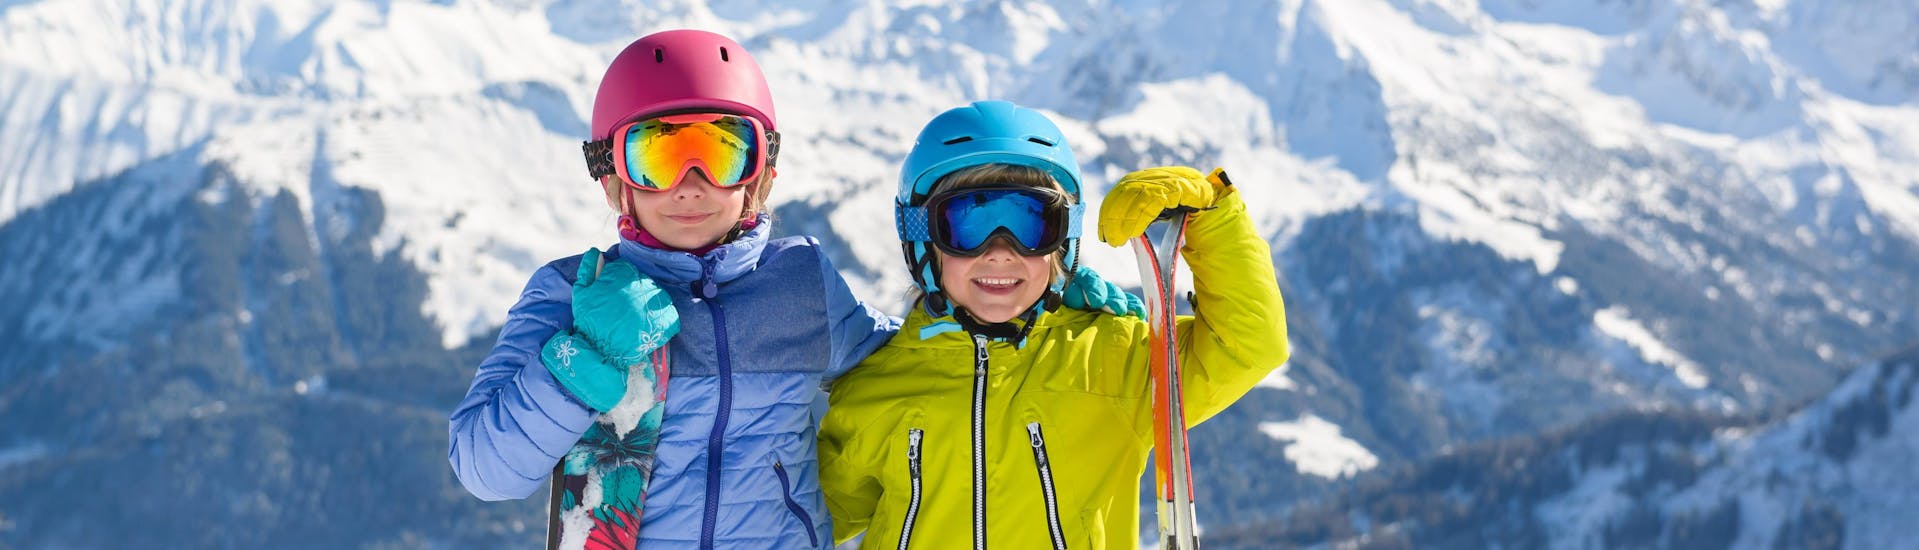 Due bambini con l'attrezzatura da sci sorridono alla fotocamera mentre si preparano per le lezioni di sci per bambini a Lenzerheide.